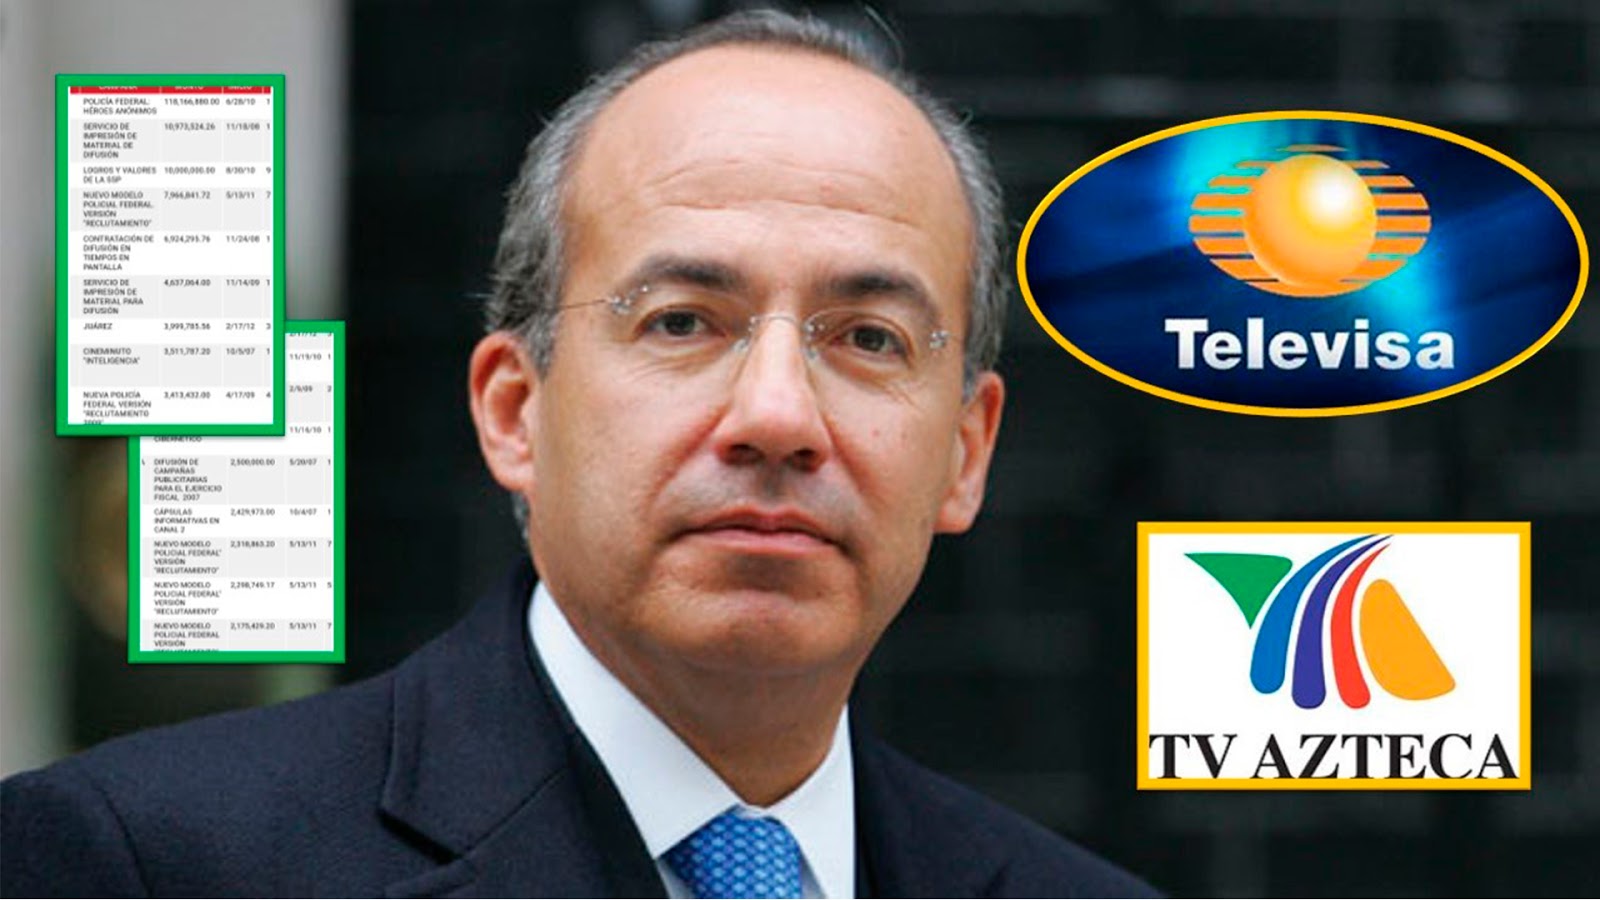 «Vamos ganando la guerra»: la publicidad de Calderón que hizo ganar millones a Televisa y Azteca